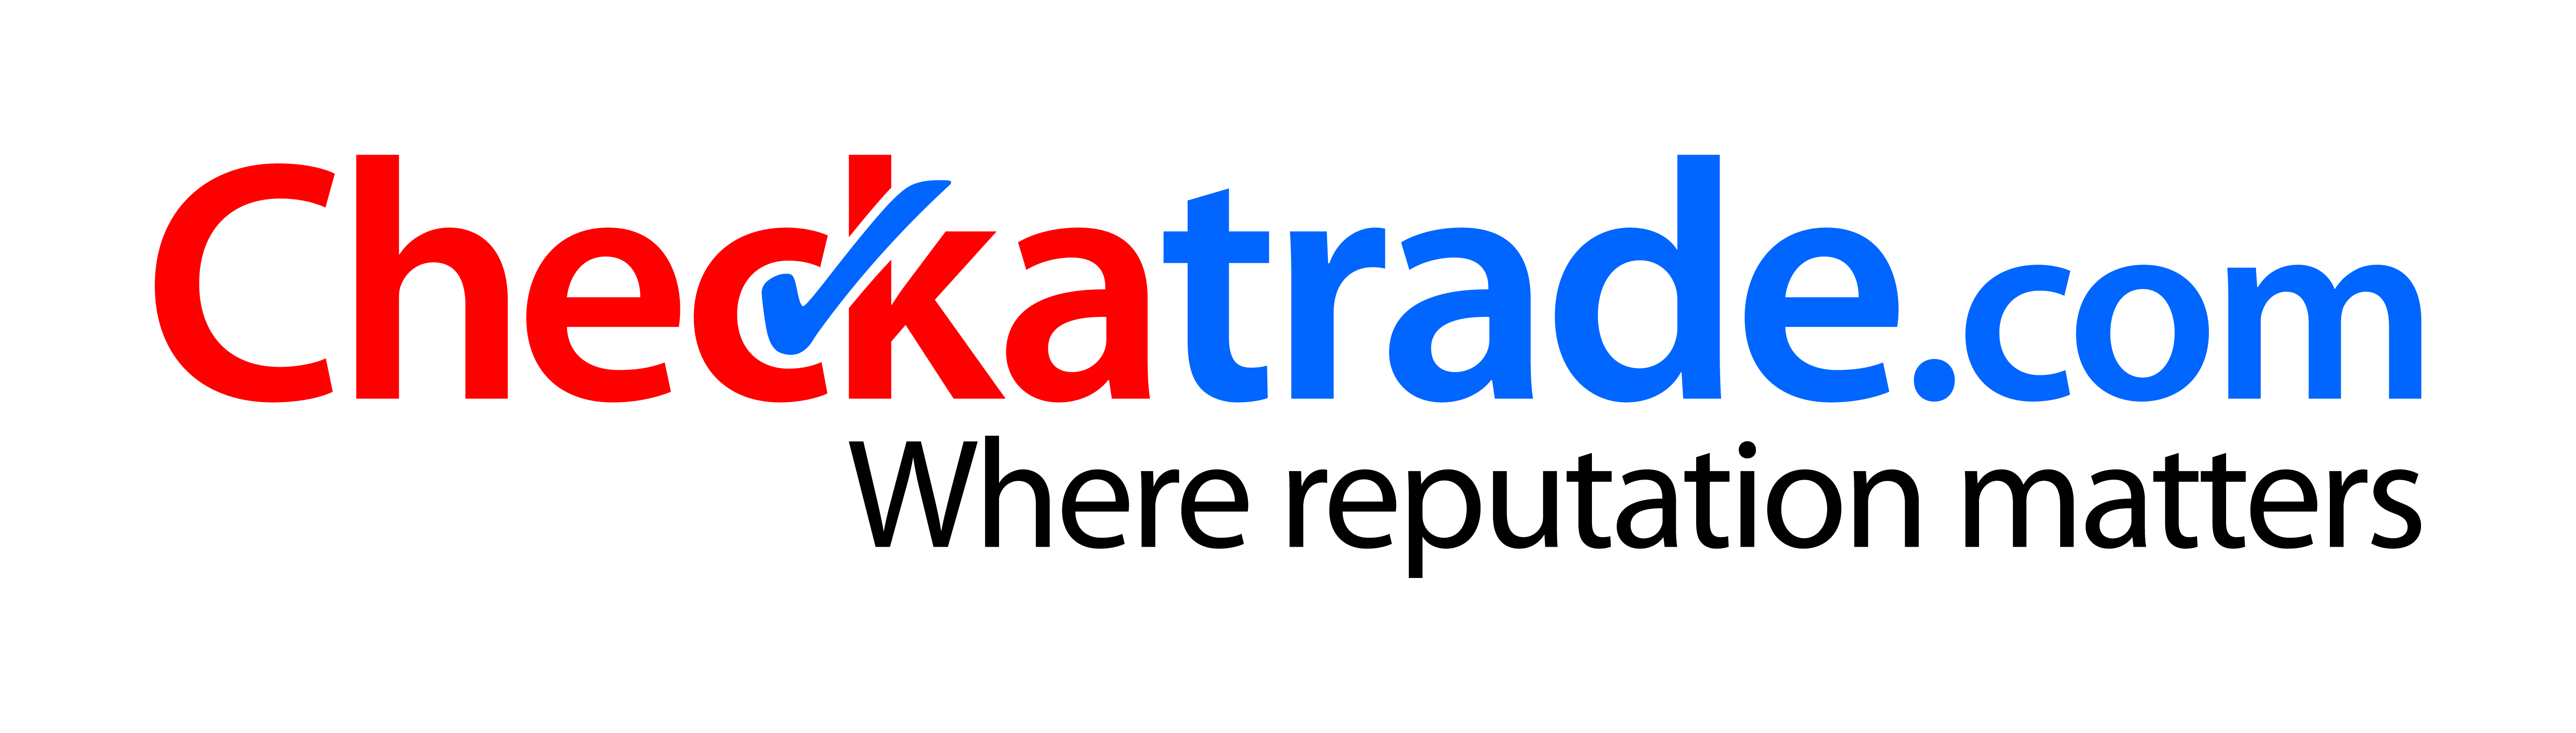 checkatrade.com-logo